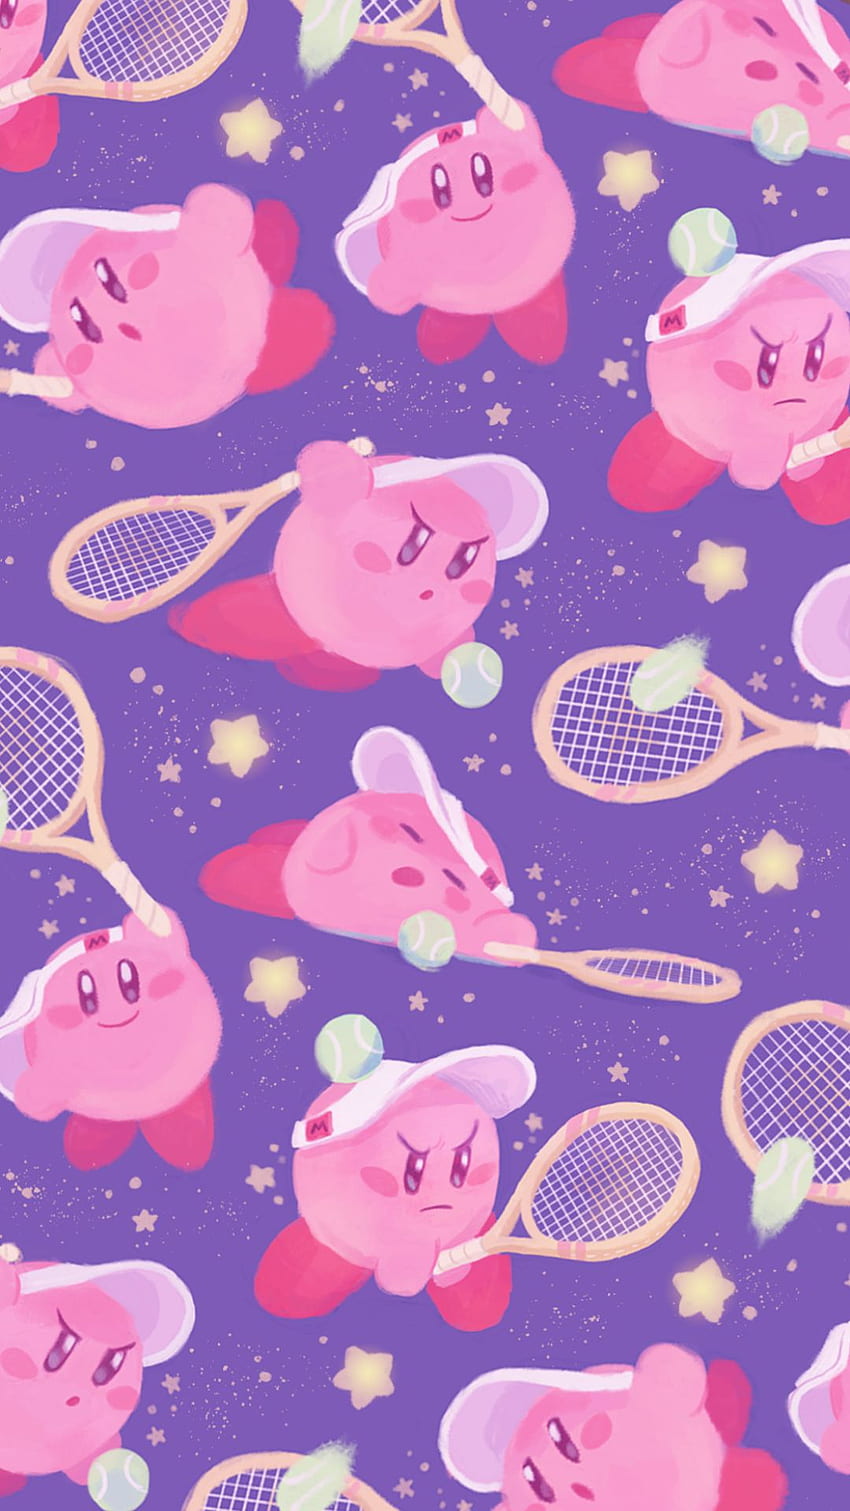 Nền Kirby không chỉ đơn thuần là hình ảnh nền đẹp mắt, mà còn mang đến một không gian sáng tạo và đầy màu sắc với hơn 35 hình nền tuyệt đẹp. Bạn sẽ không thể cưỡng lại được sự hấp dẫn của chúng khi sử dụng trên màn hình của mình.